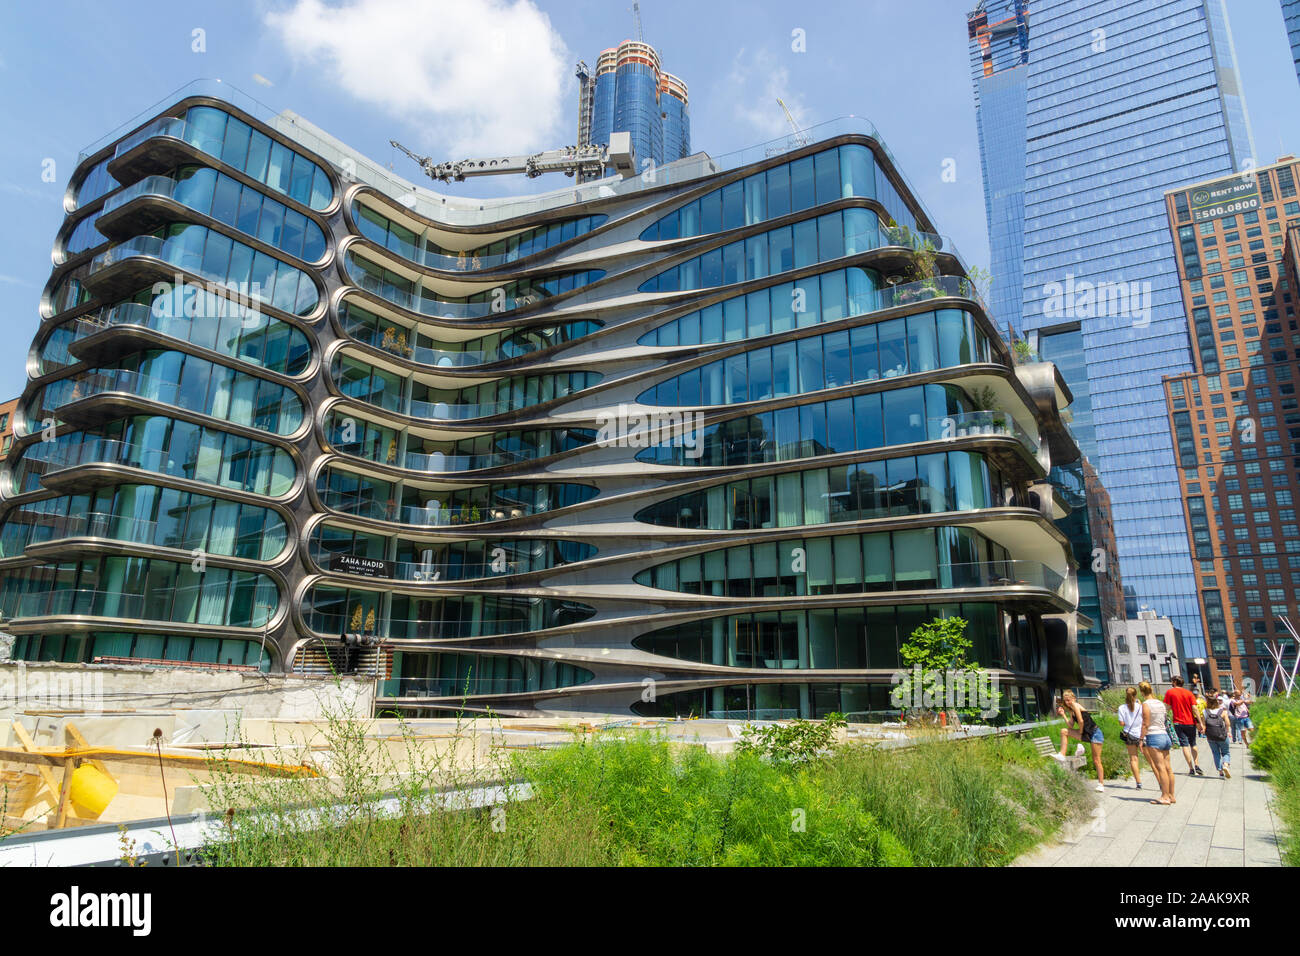 New York, USA - 20 août 2018 Vue de la 28e rue Ouest 520 résidences en copropriété conçu par l'architecte Zaha Hadid le long de la High Line. Banque D'Images